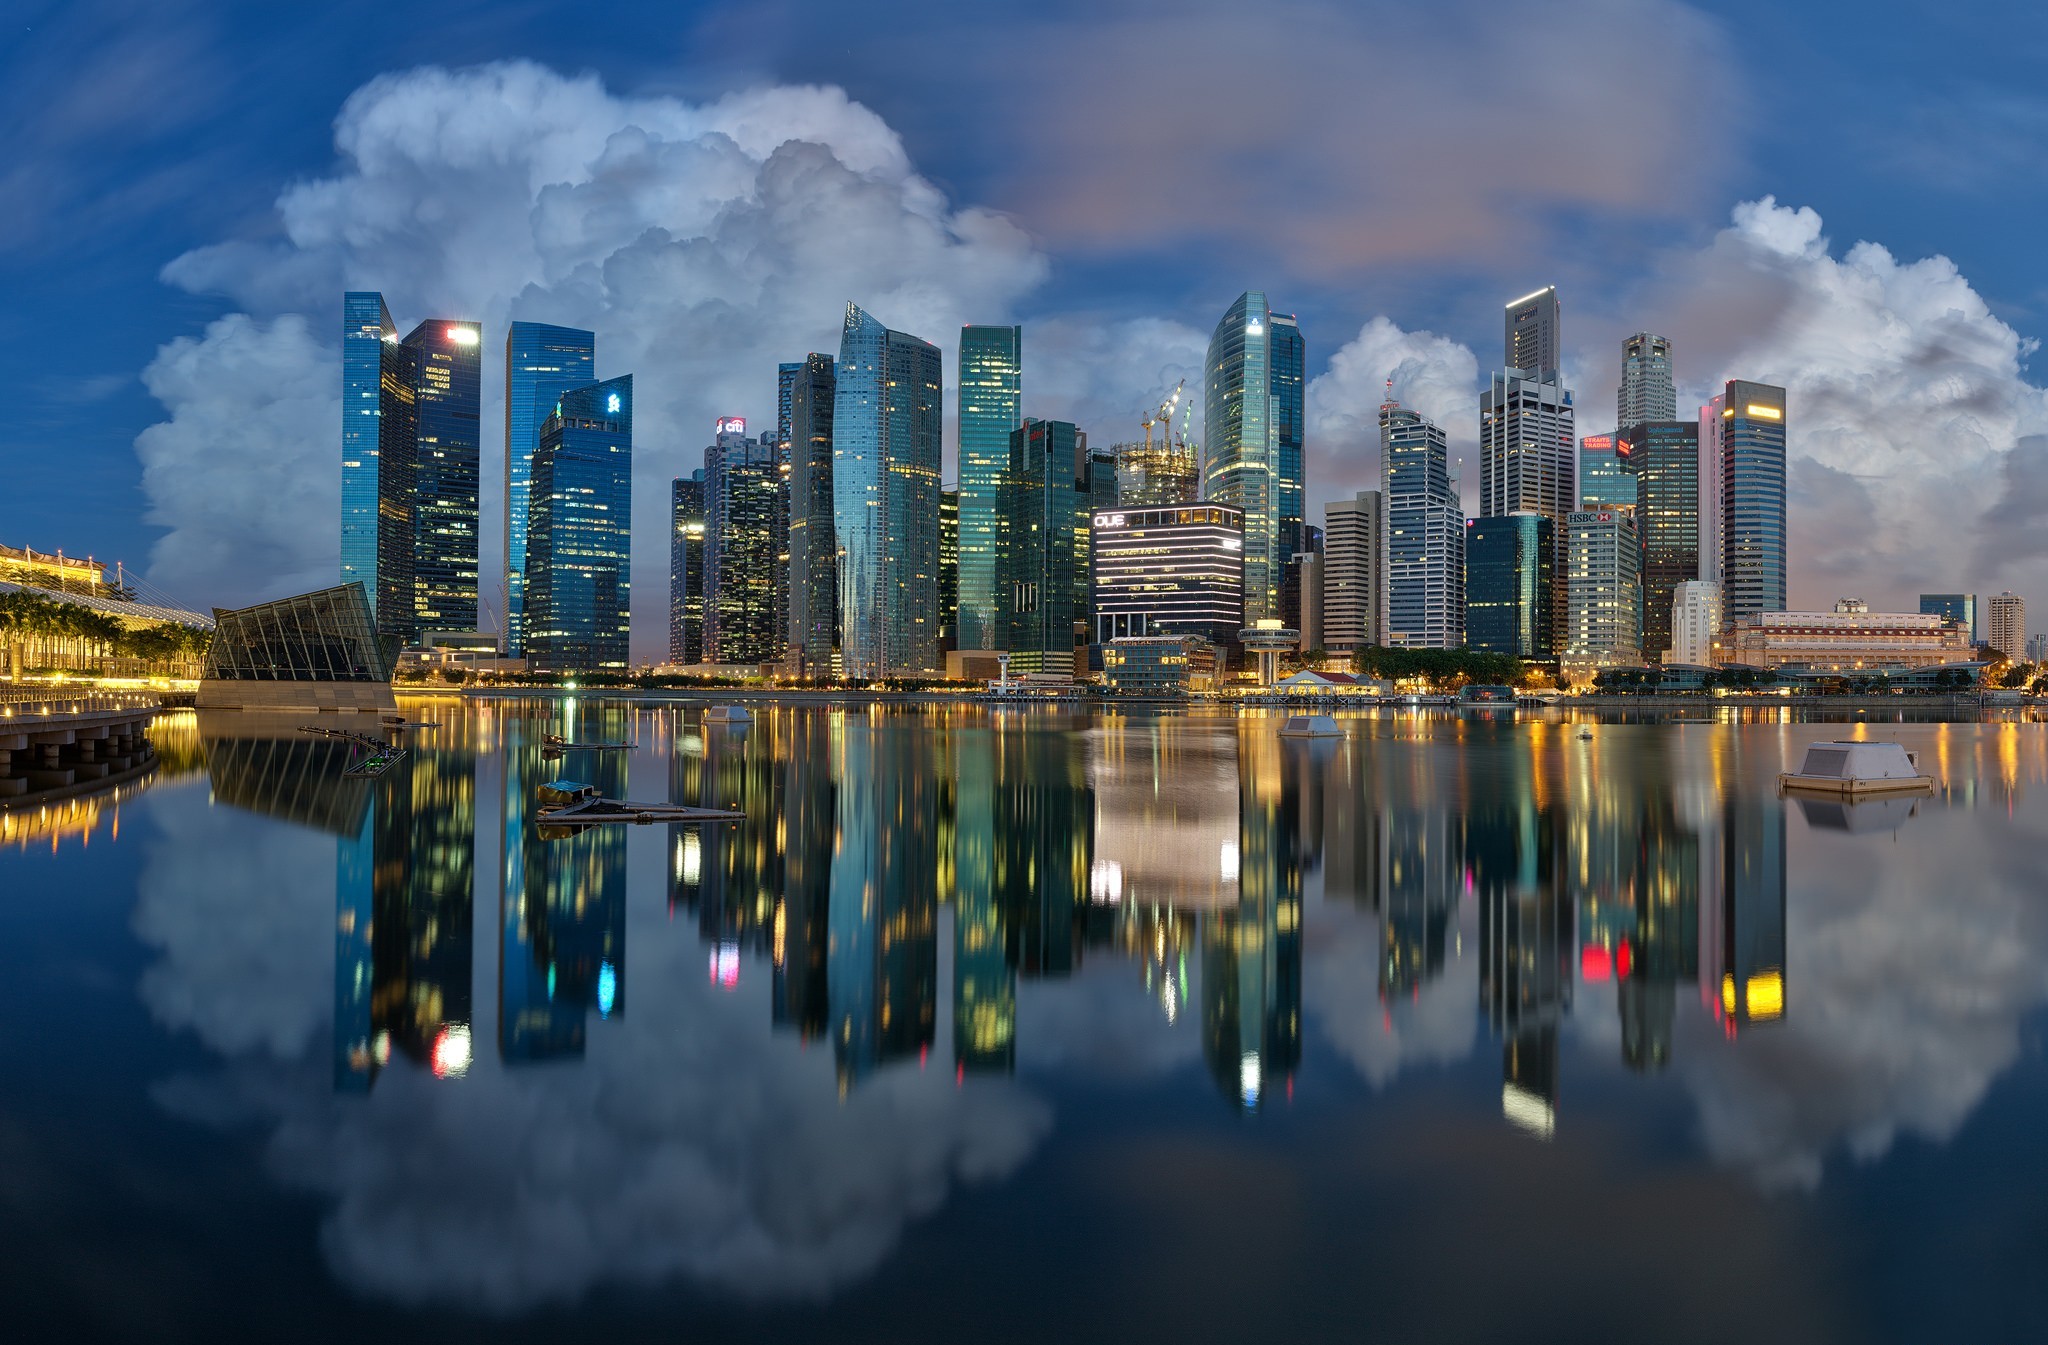 singapour images fond d'écran,paysage urbain,zone métropolitaine,ville,réflexion,horizon